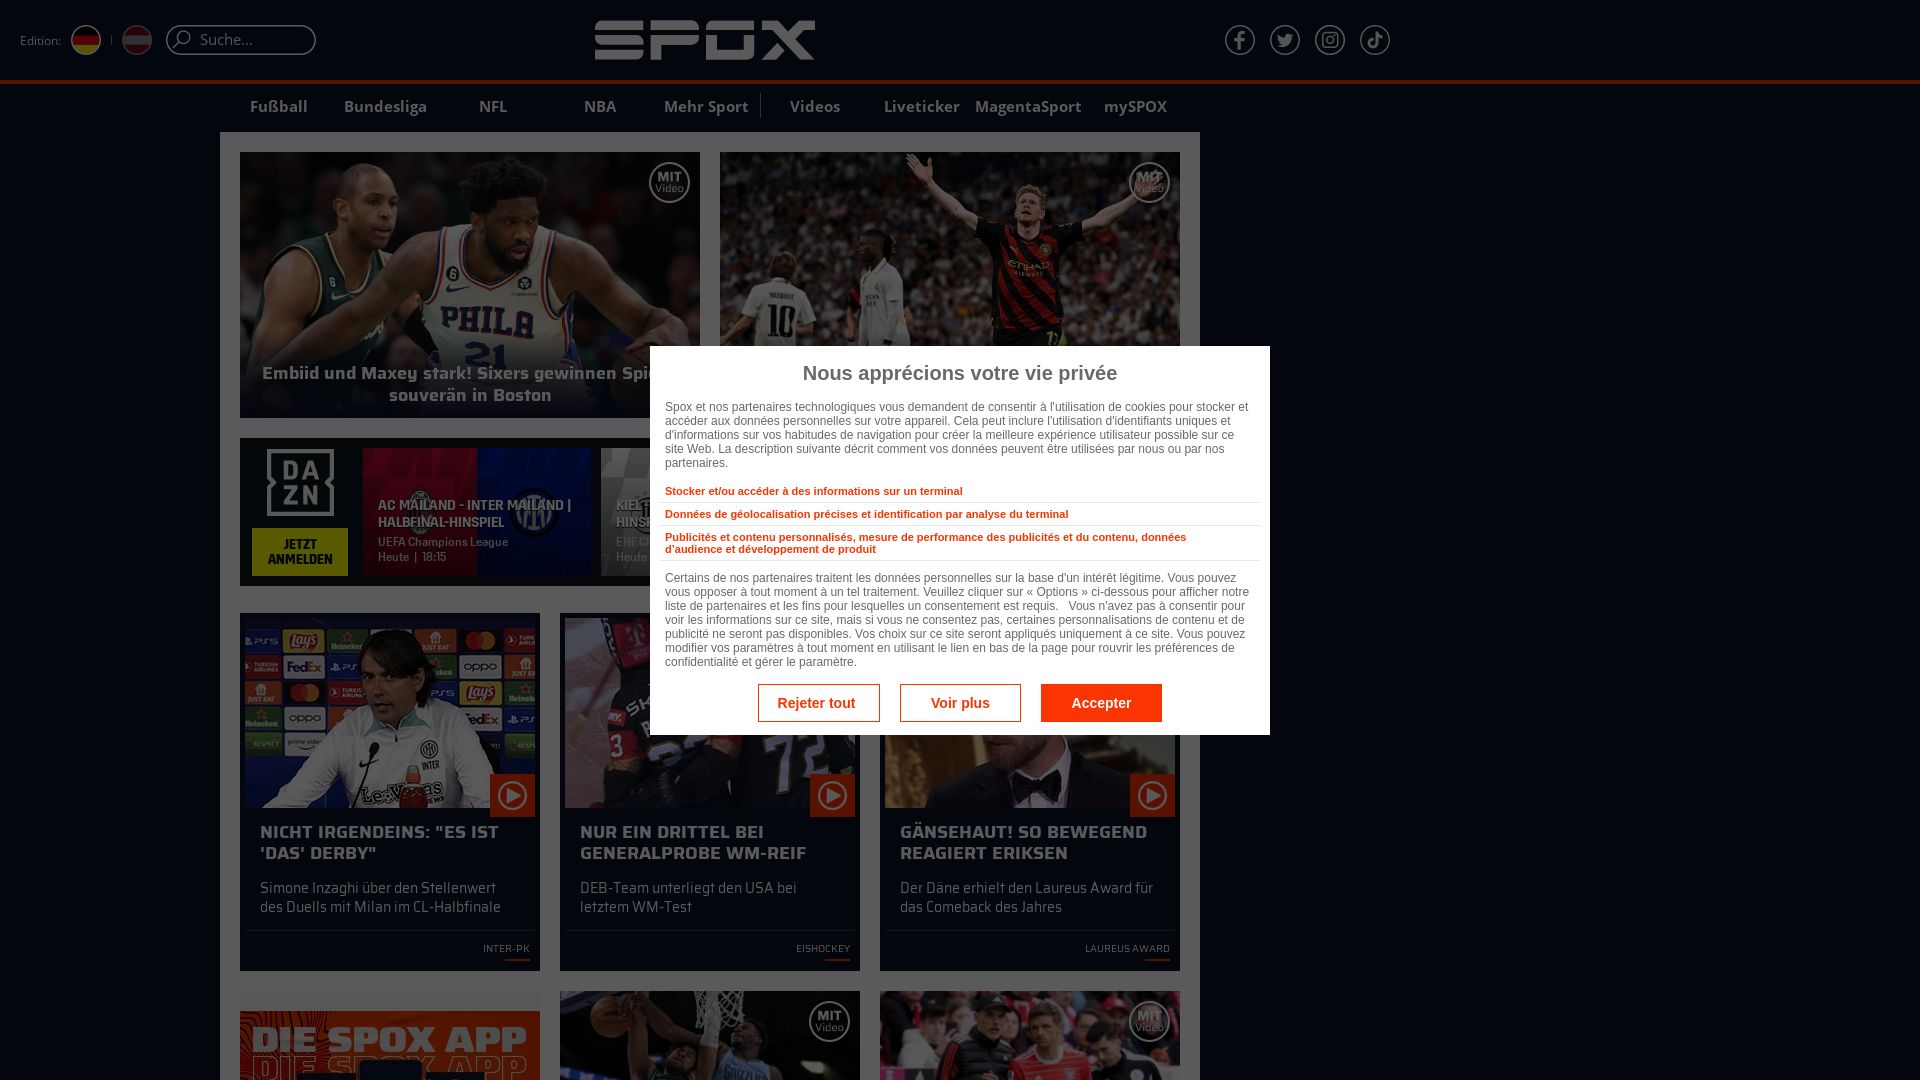 网站状态 spox.com 是  在线的